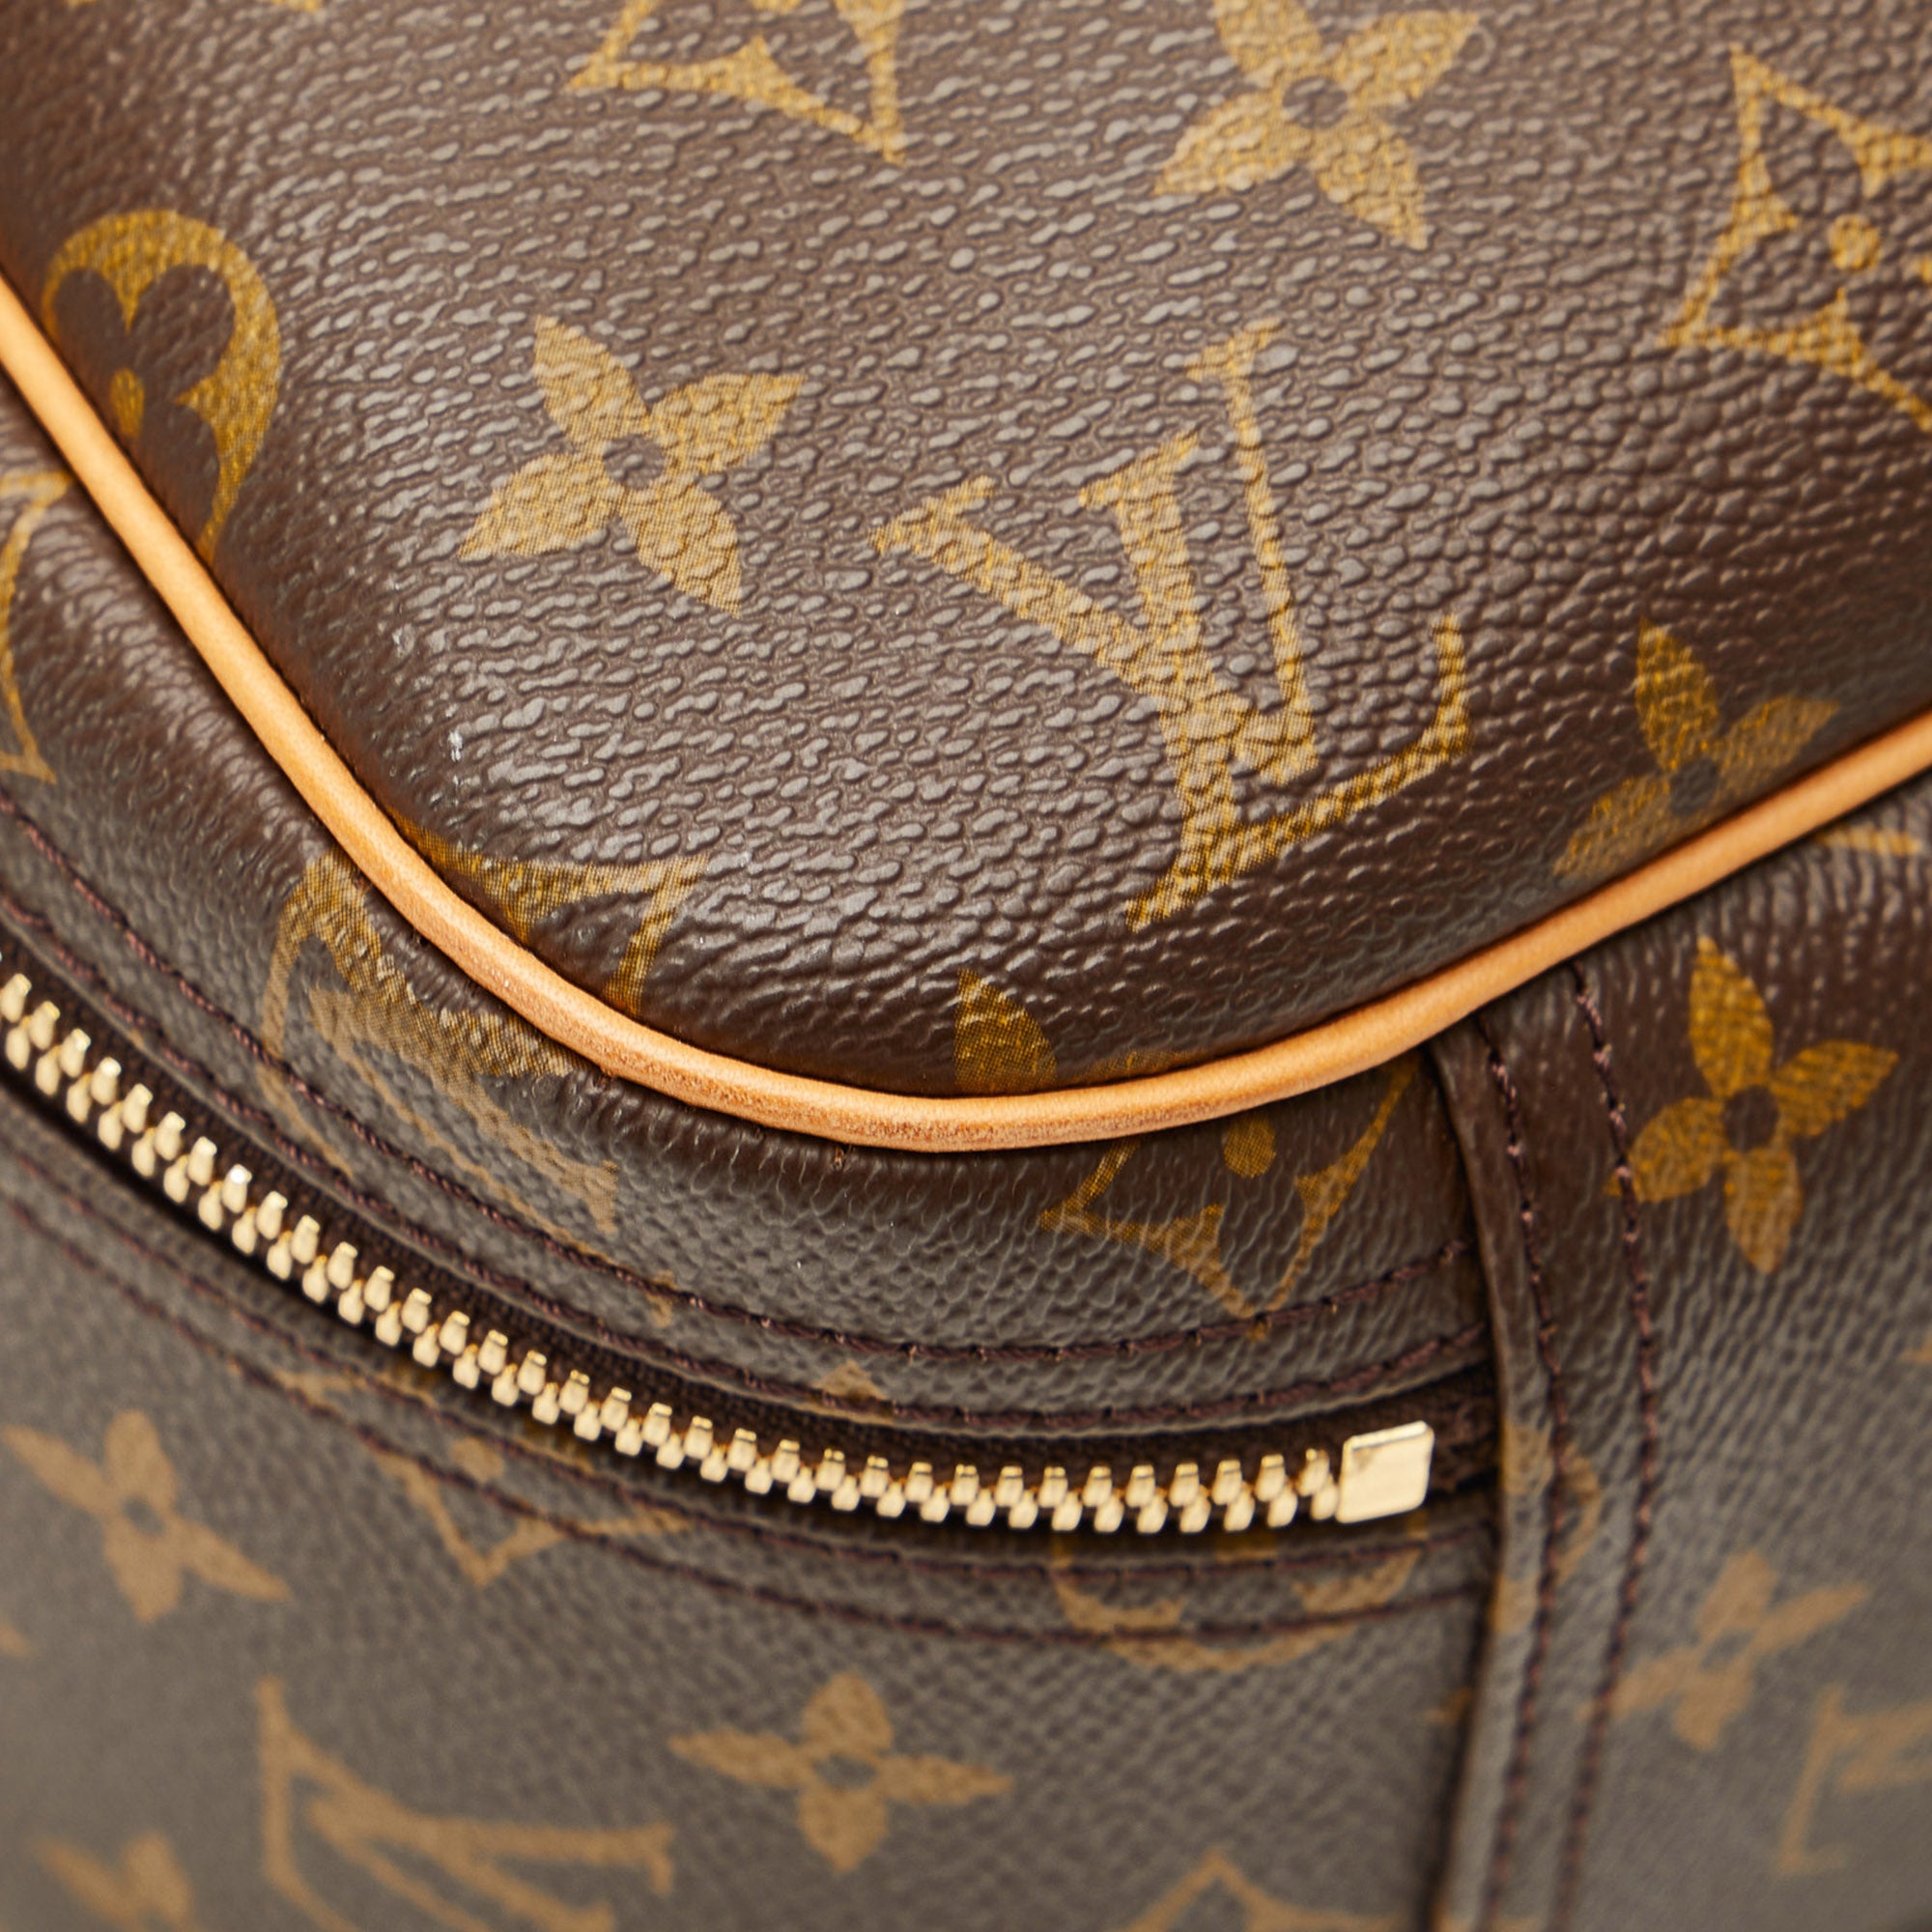 Excursion cloth handbag Louis Vuitton Brown in Cloth - 29288341